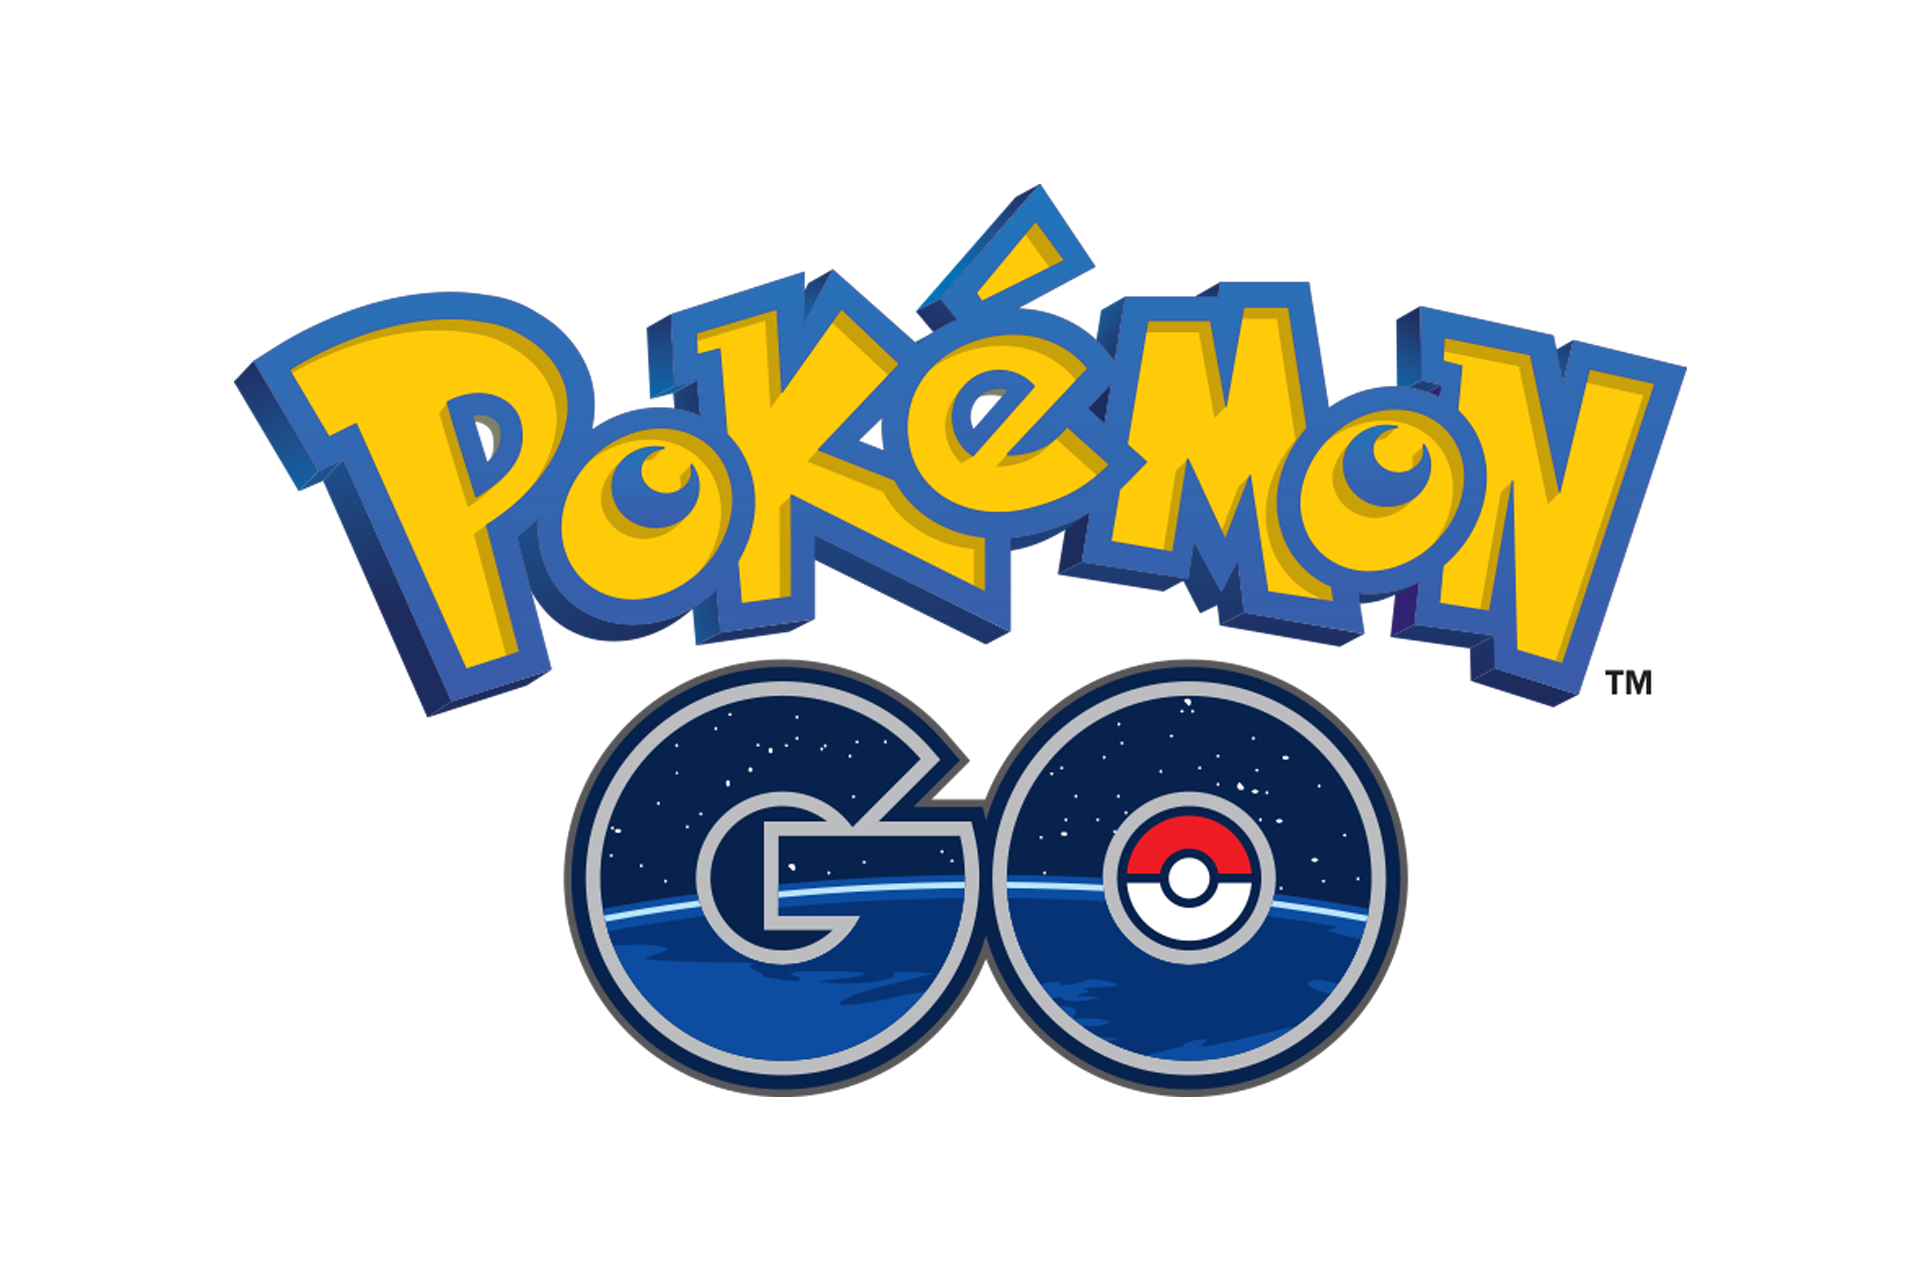 Pokémon Go, notícias sobre a maior febre mais recente no mundo dos jogos